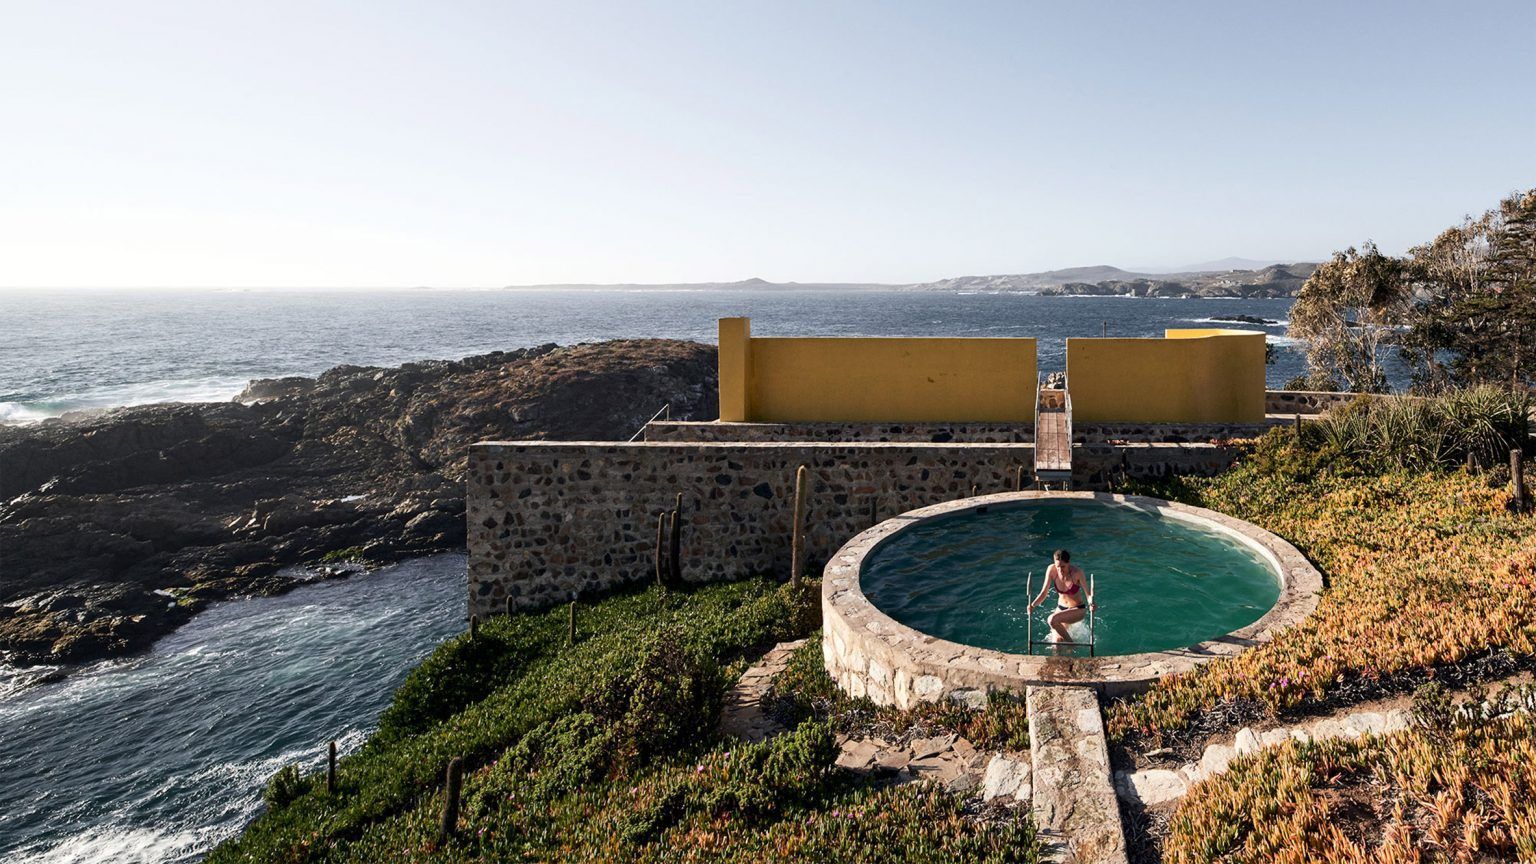 Дом-волнорез: фото каменного дома из Чили, который первым встречает волны океана